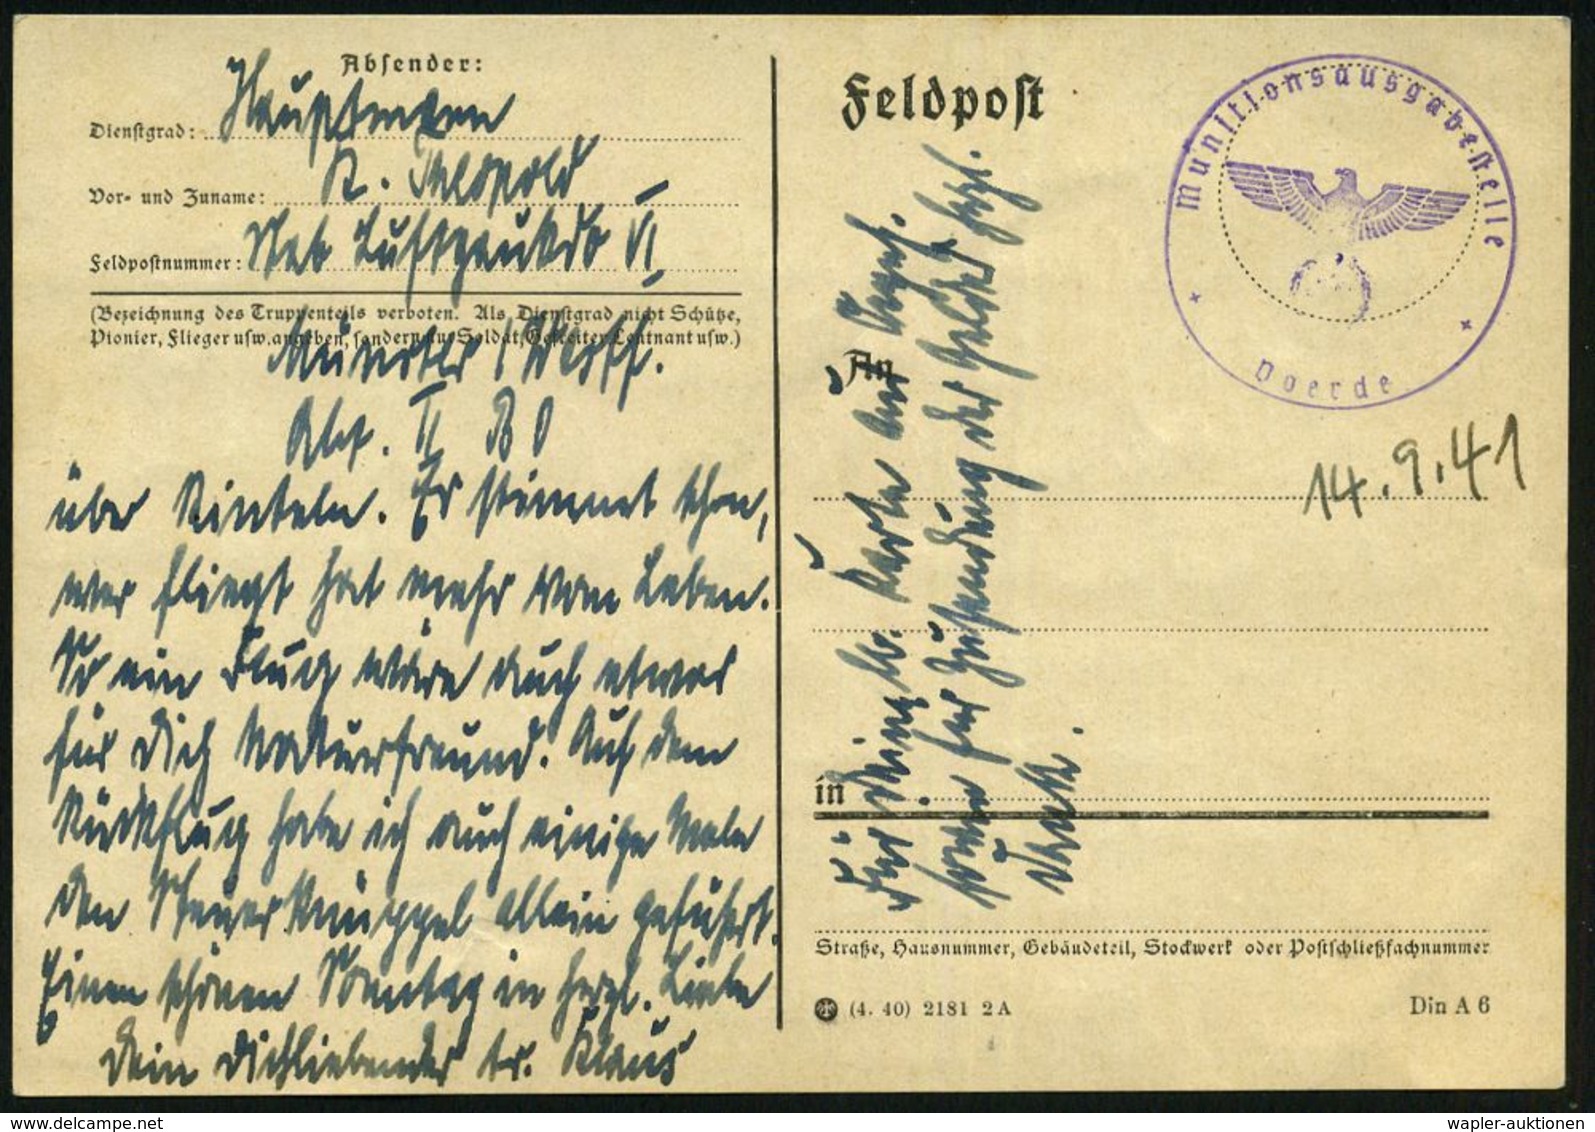 MÜNSTER (WESTF) 2/ Dd/ EIGENE VORSICHT/ BESTER UNFALLSCHUTZ #bzw.# Auf Postsendungen/ Zustell-postamt../ Angeben. 1941/4 - WO2